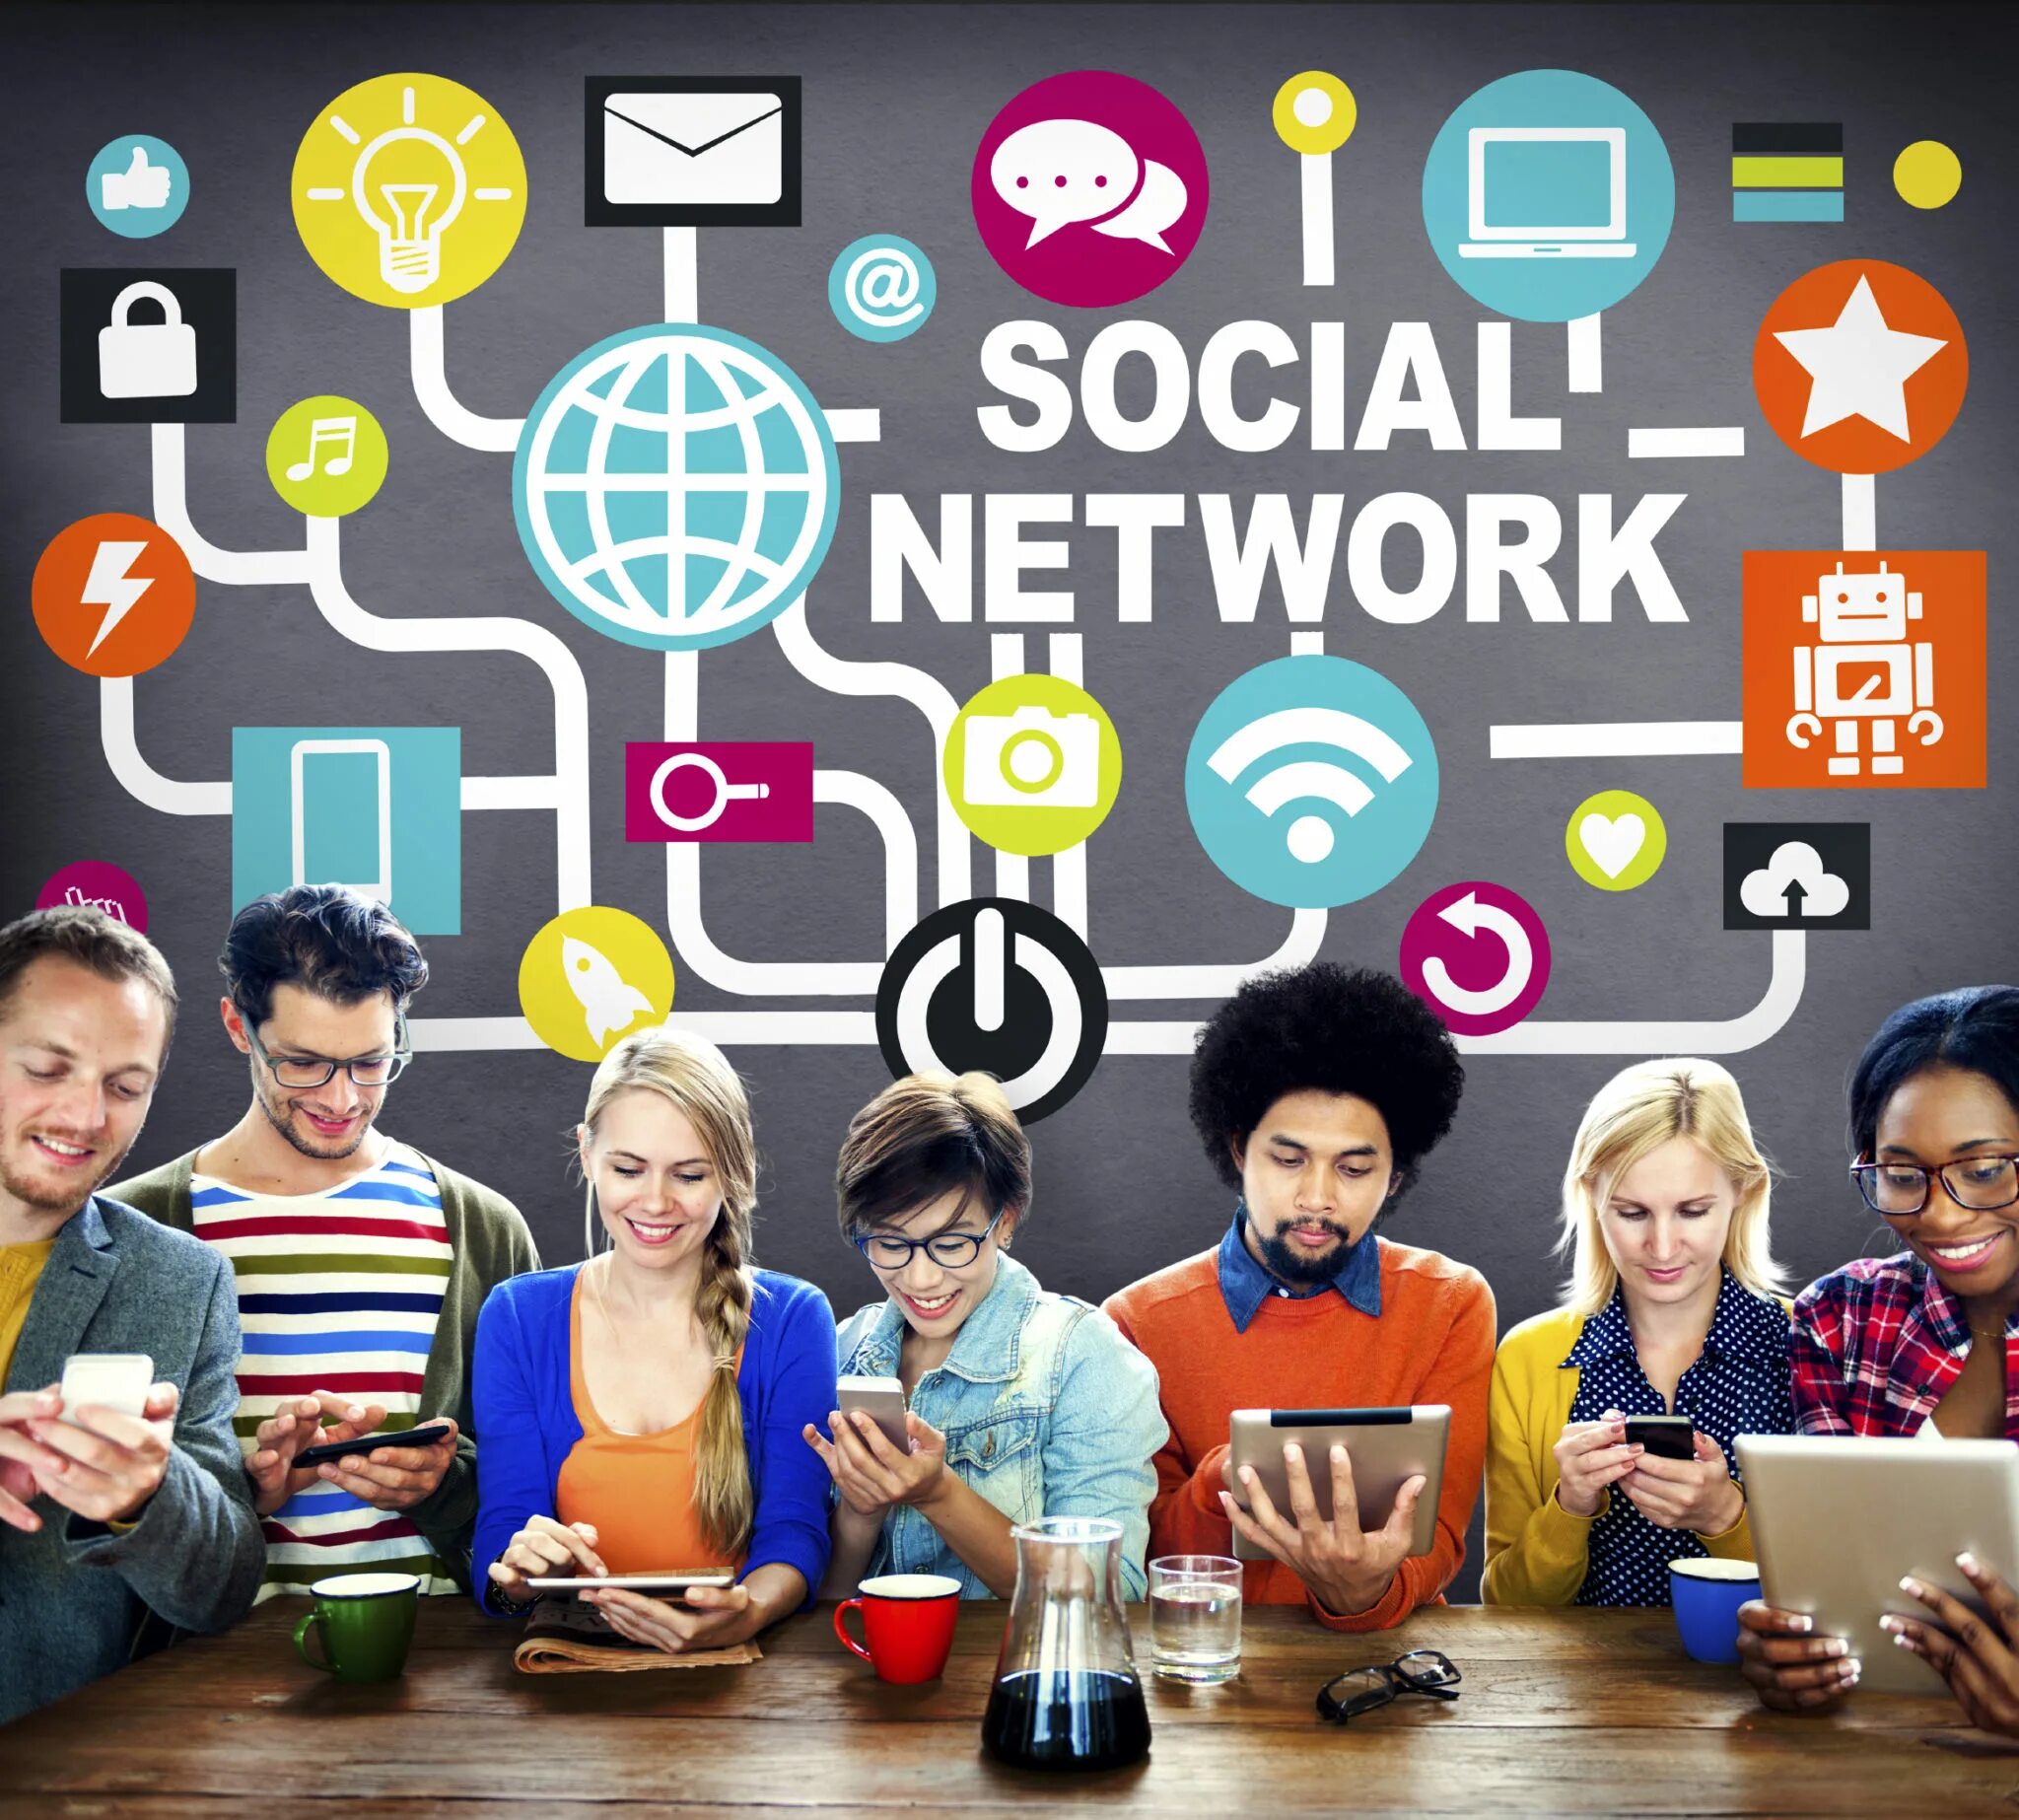 Social website. В социальных сетях. Социальный. Социальная сеть (интернет). Сообщества в социальных сетях.